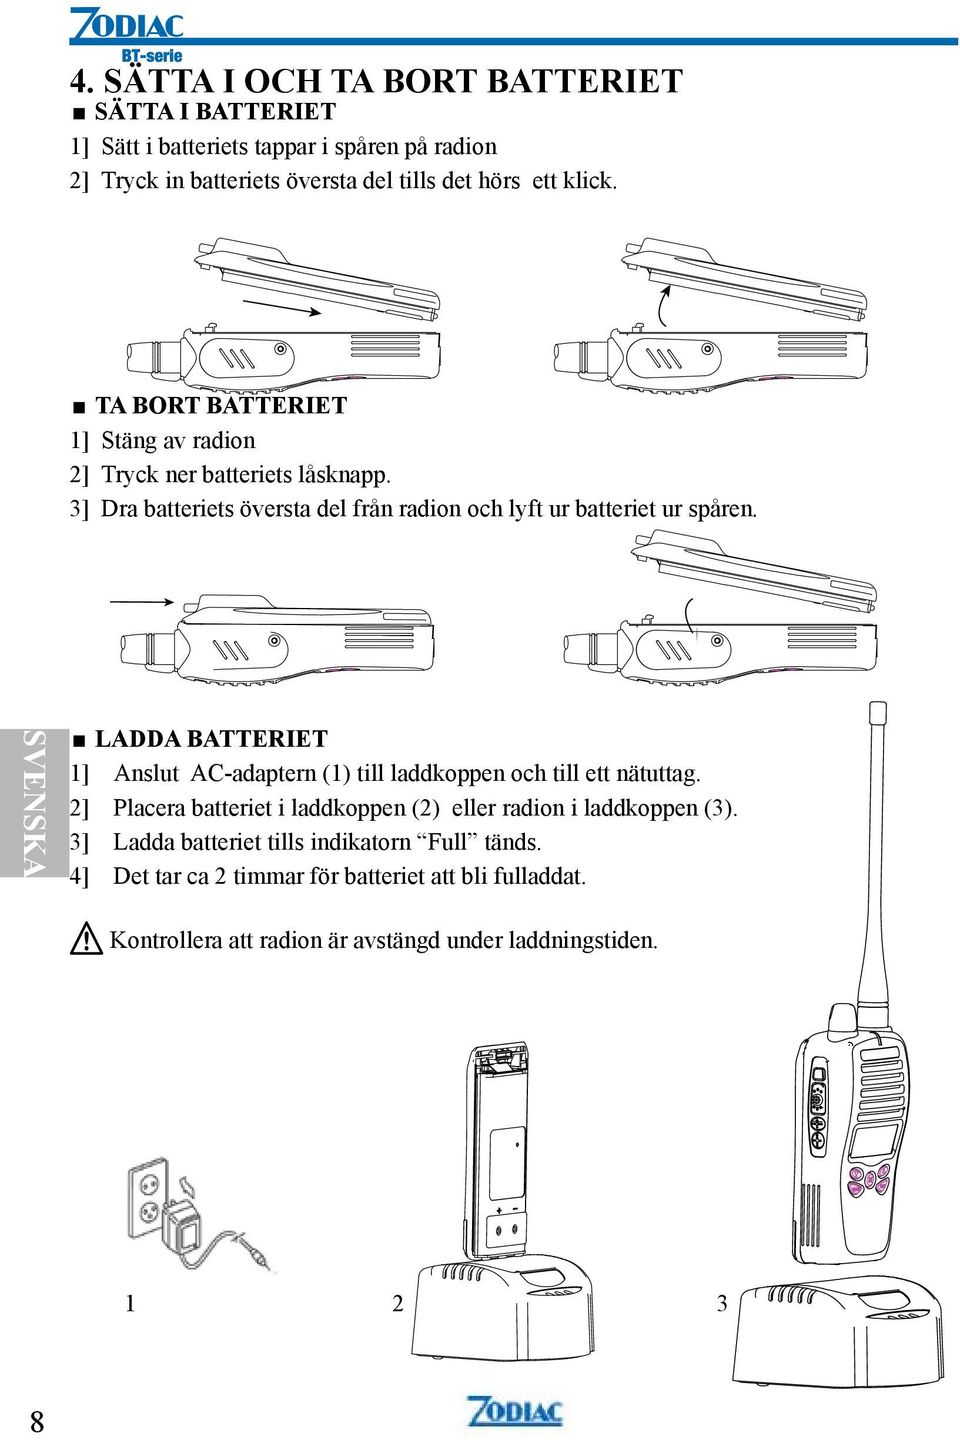 SVENSKA LADDA BATTERIET 1] Anslut AC-adaptern (1) till laddkoppen och till ett nätuttag. 2] Placera batteriet i laddkoppen (2) eller radion i laddkoppen (3).